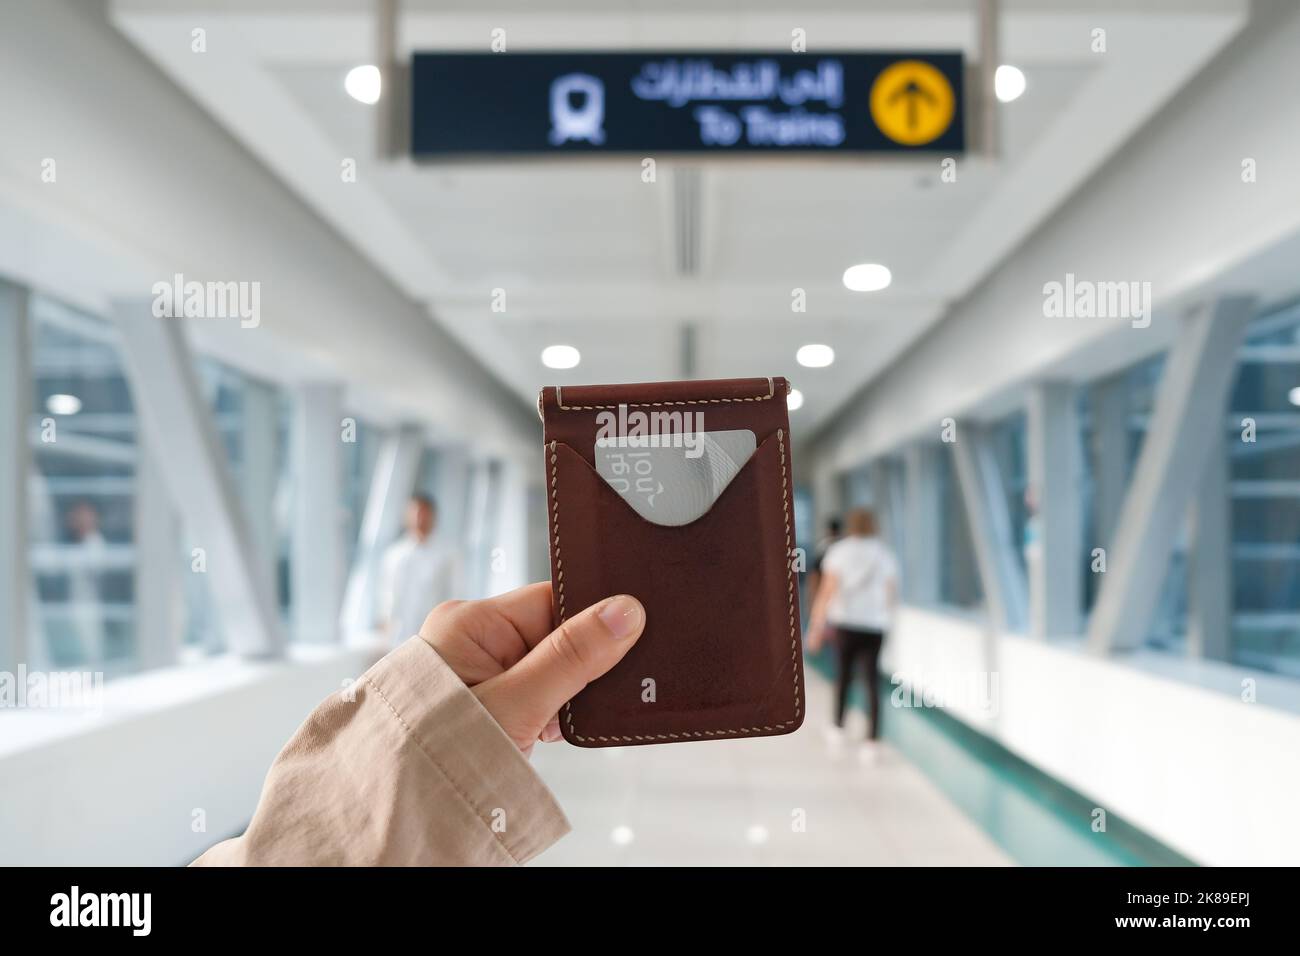 Une main femelle tient un porte-carte en cuir avec une carte Silver Dubai Metro Nol dans une gare de la ville moderne du Moyen-Orient. Tarif électronique sans contact. Banque D'Images